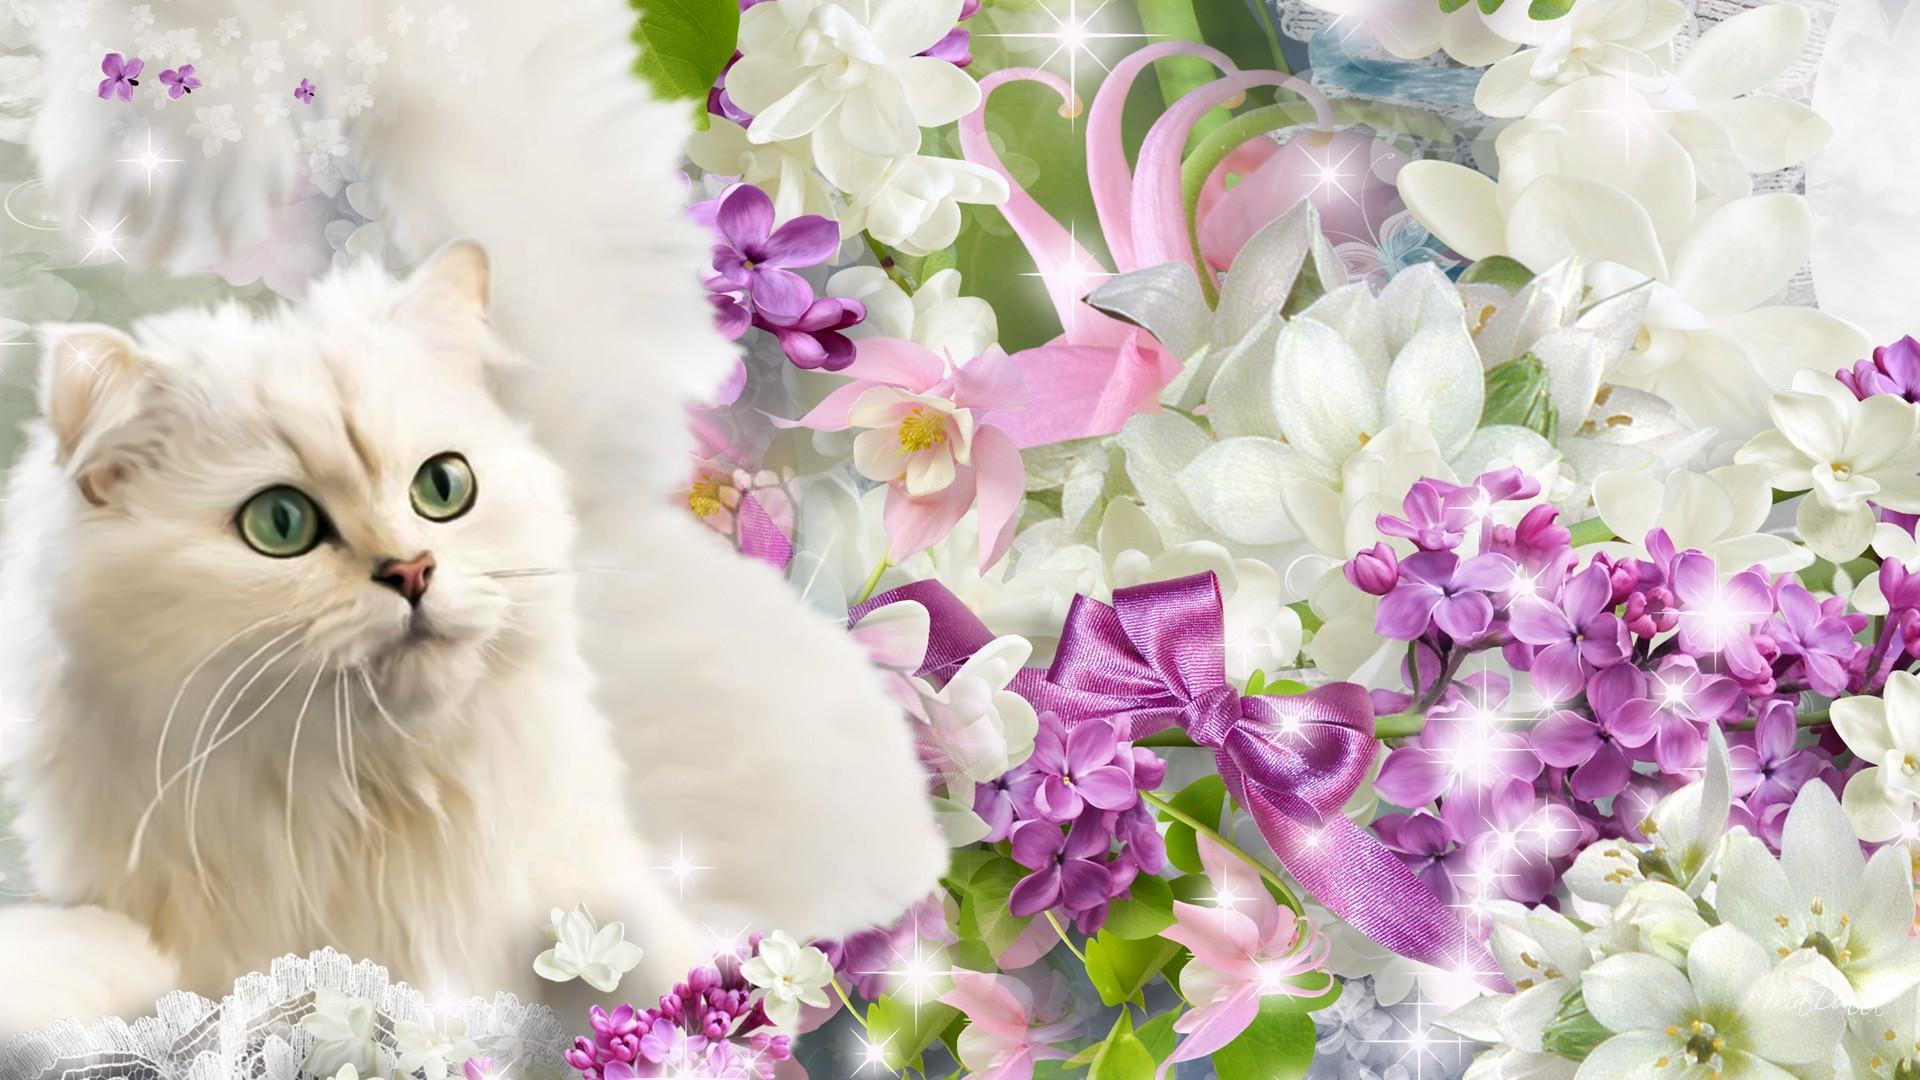 The Green Eyed Cat HD desktop wallpaper, Widescreen, High